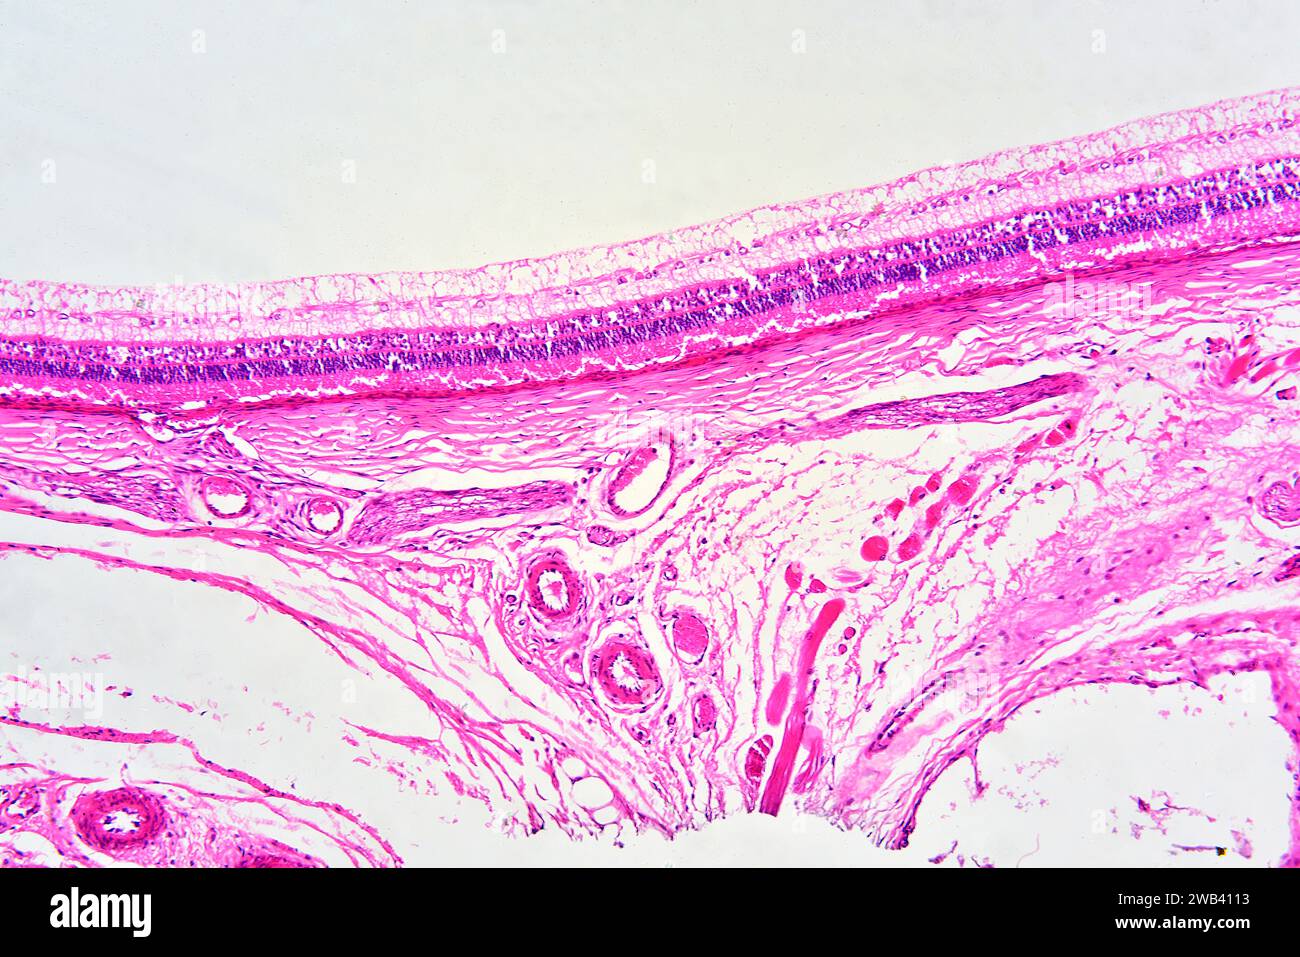 Sezione dell'occhio umano che mostra retina con aste e coni, tessuto coroide e connettivo con vasi sanguigni. X75 a 10 cm di larghezza. Foto Stock